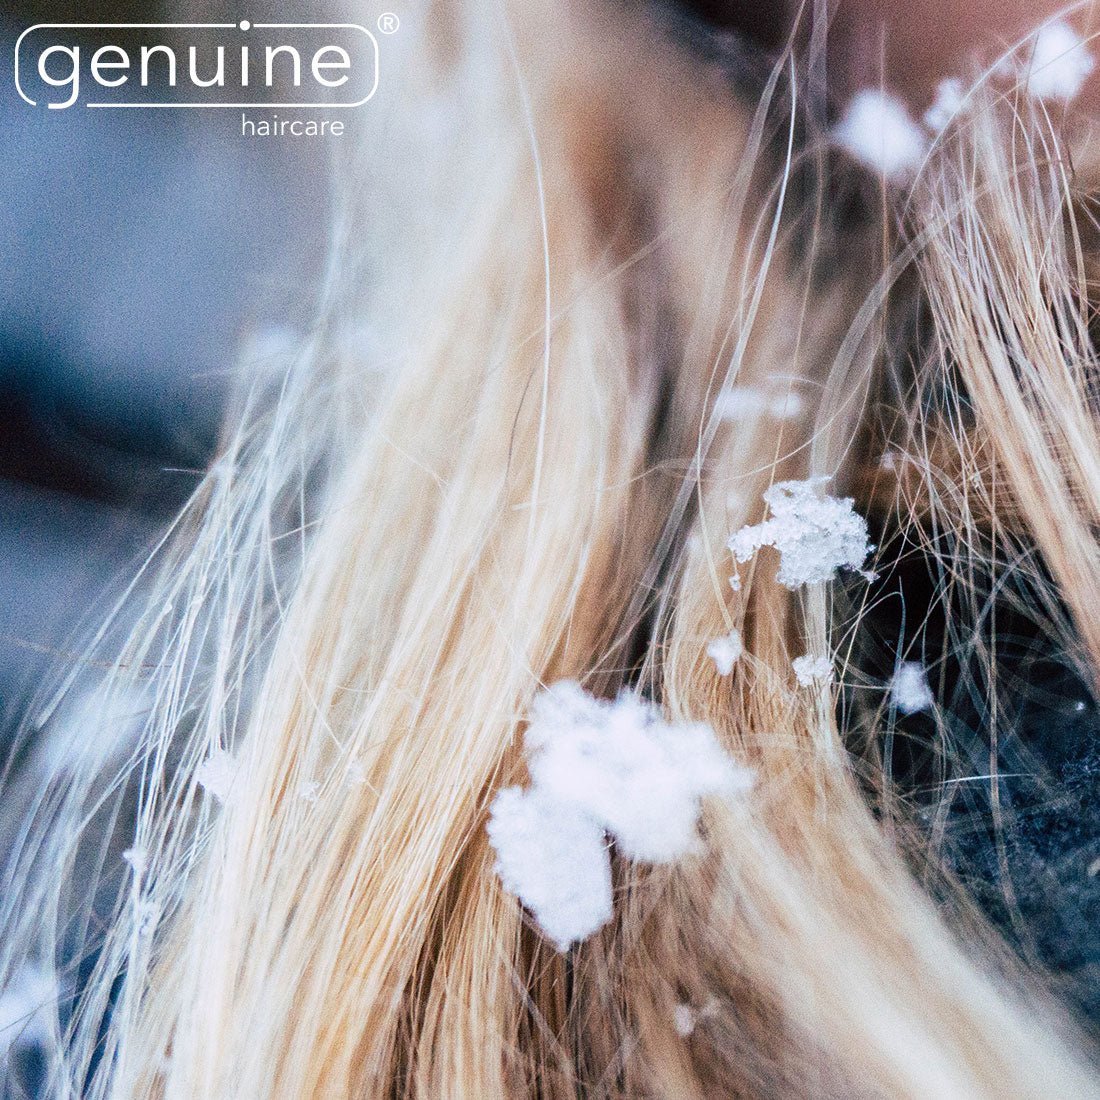 Schöne Haare auch im Winter - die besten Tipps gegen bekannte Haarprobleme - genuine haircare